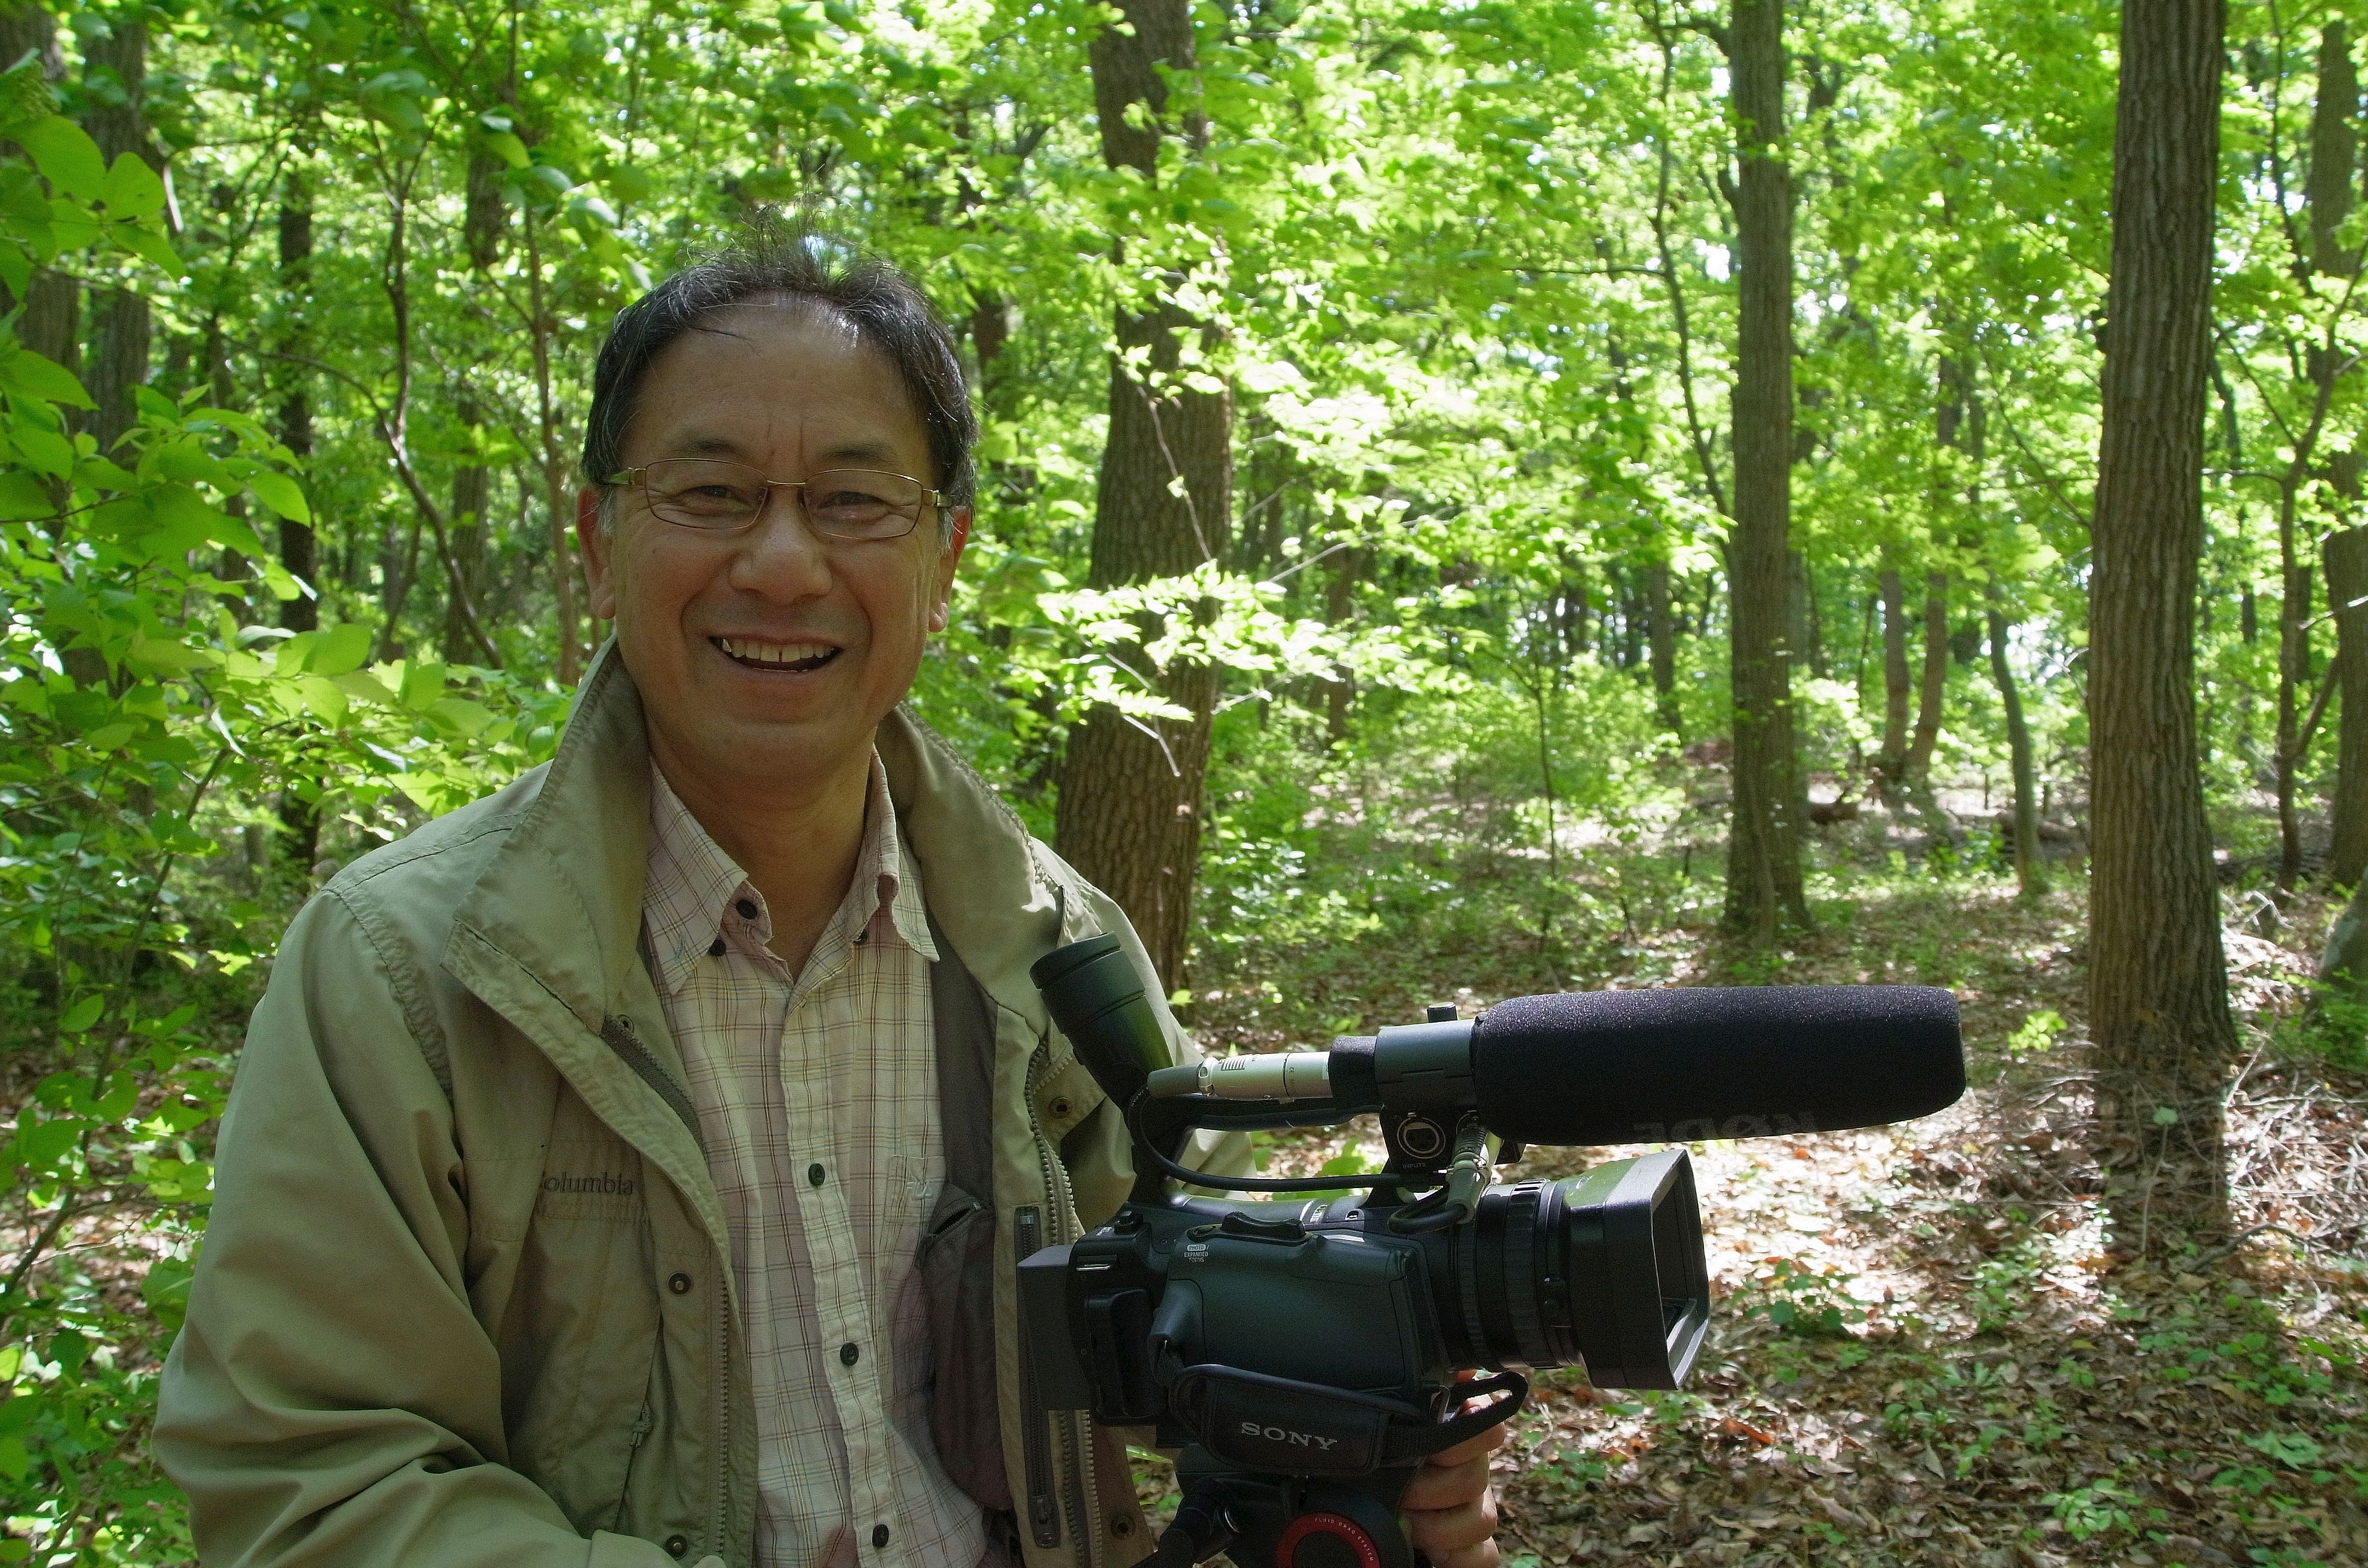 日本農業遺産「武蔵野の落ち葉堆肥農法」を映画に撮った原村政樹監督